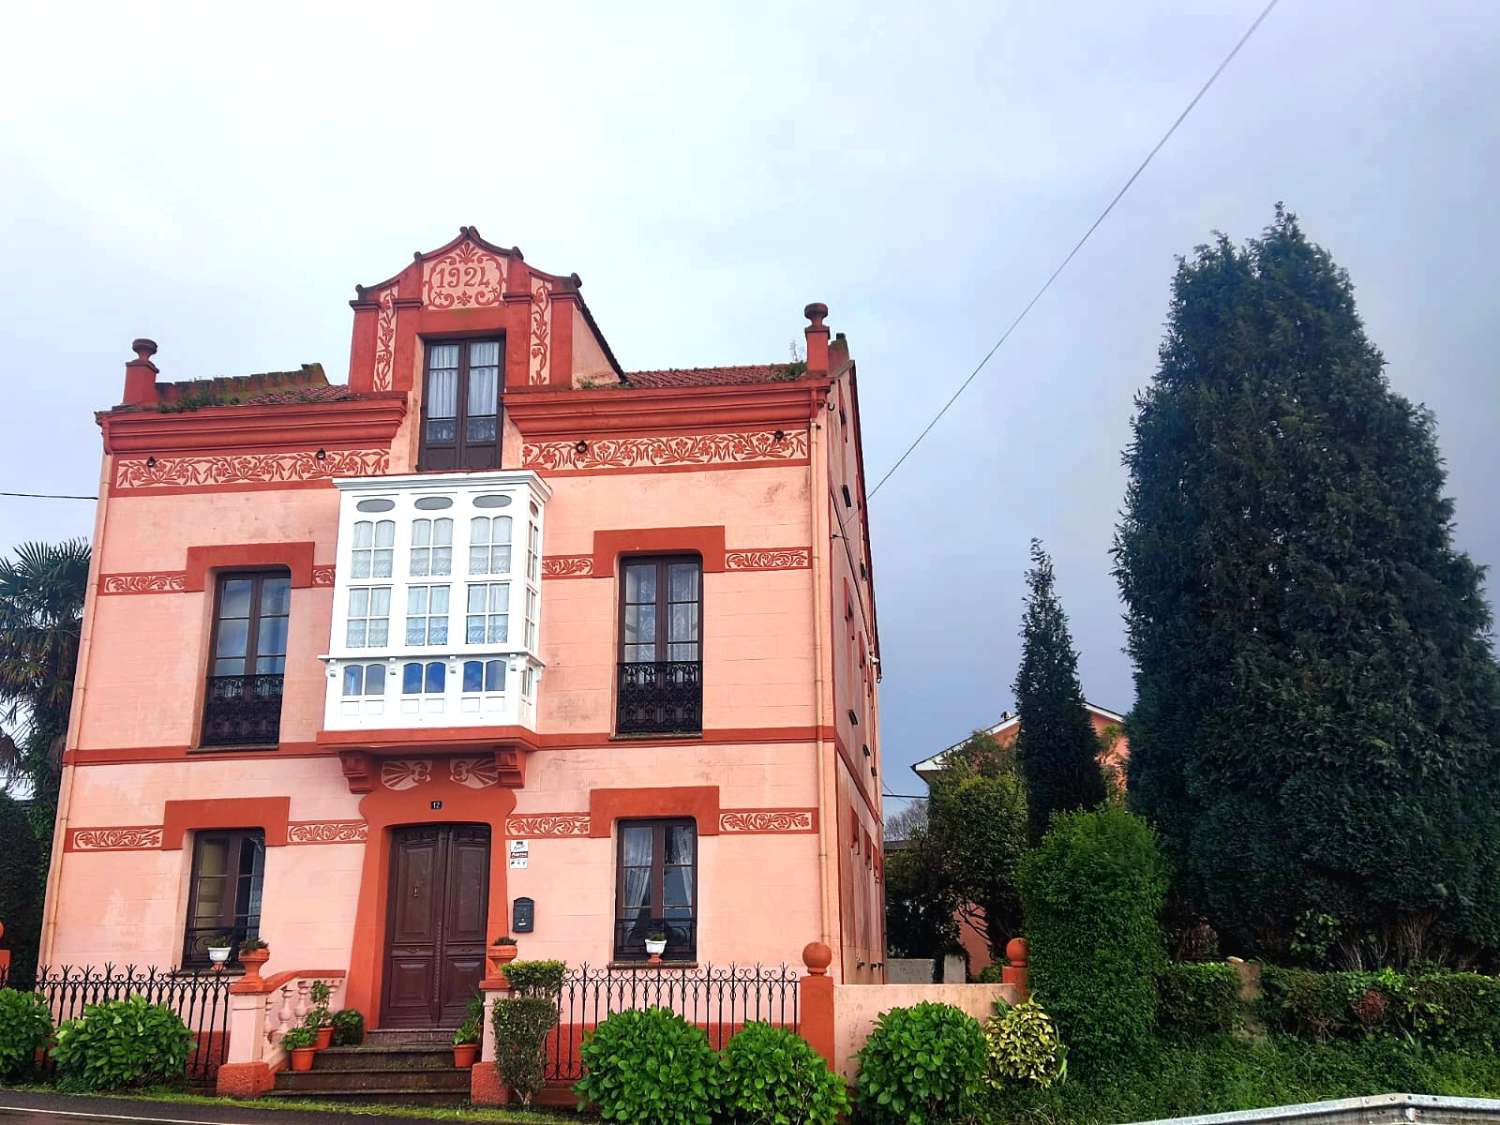 Impresionante Casa Indiana en el Occidente Asturiano